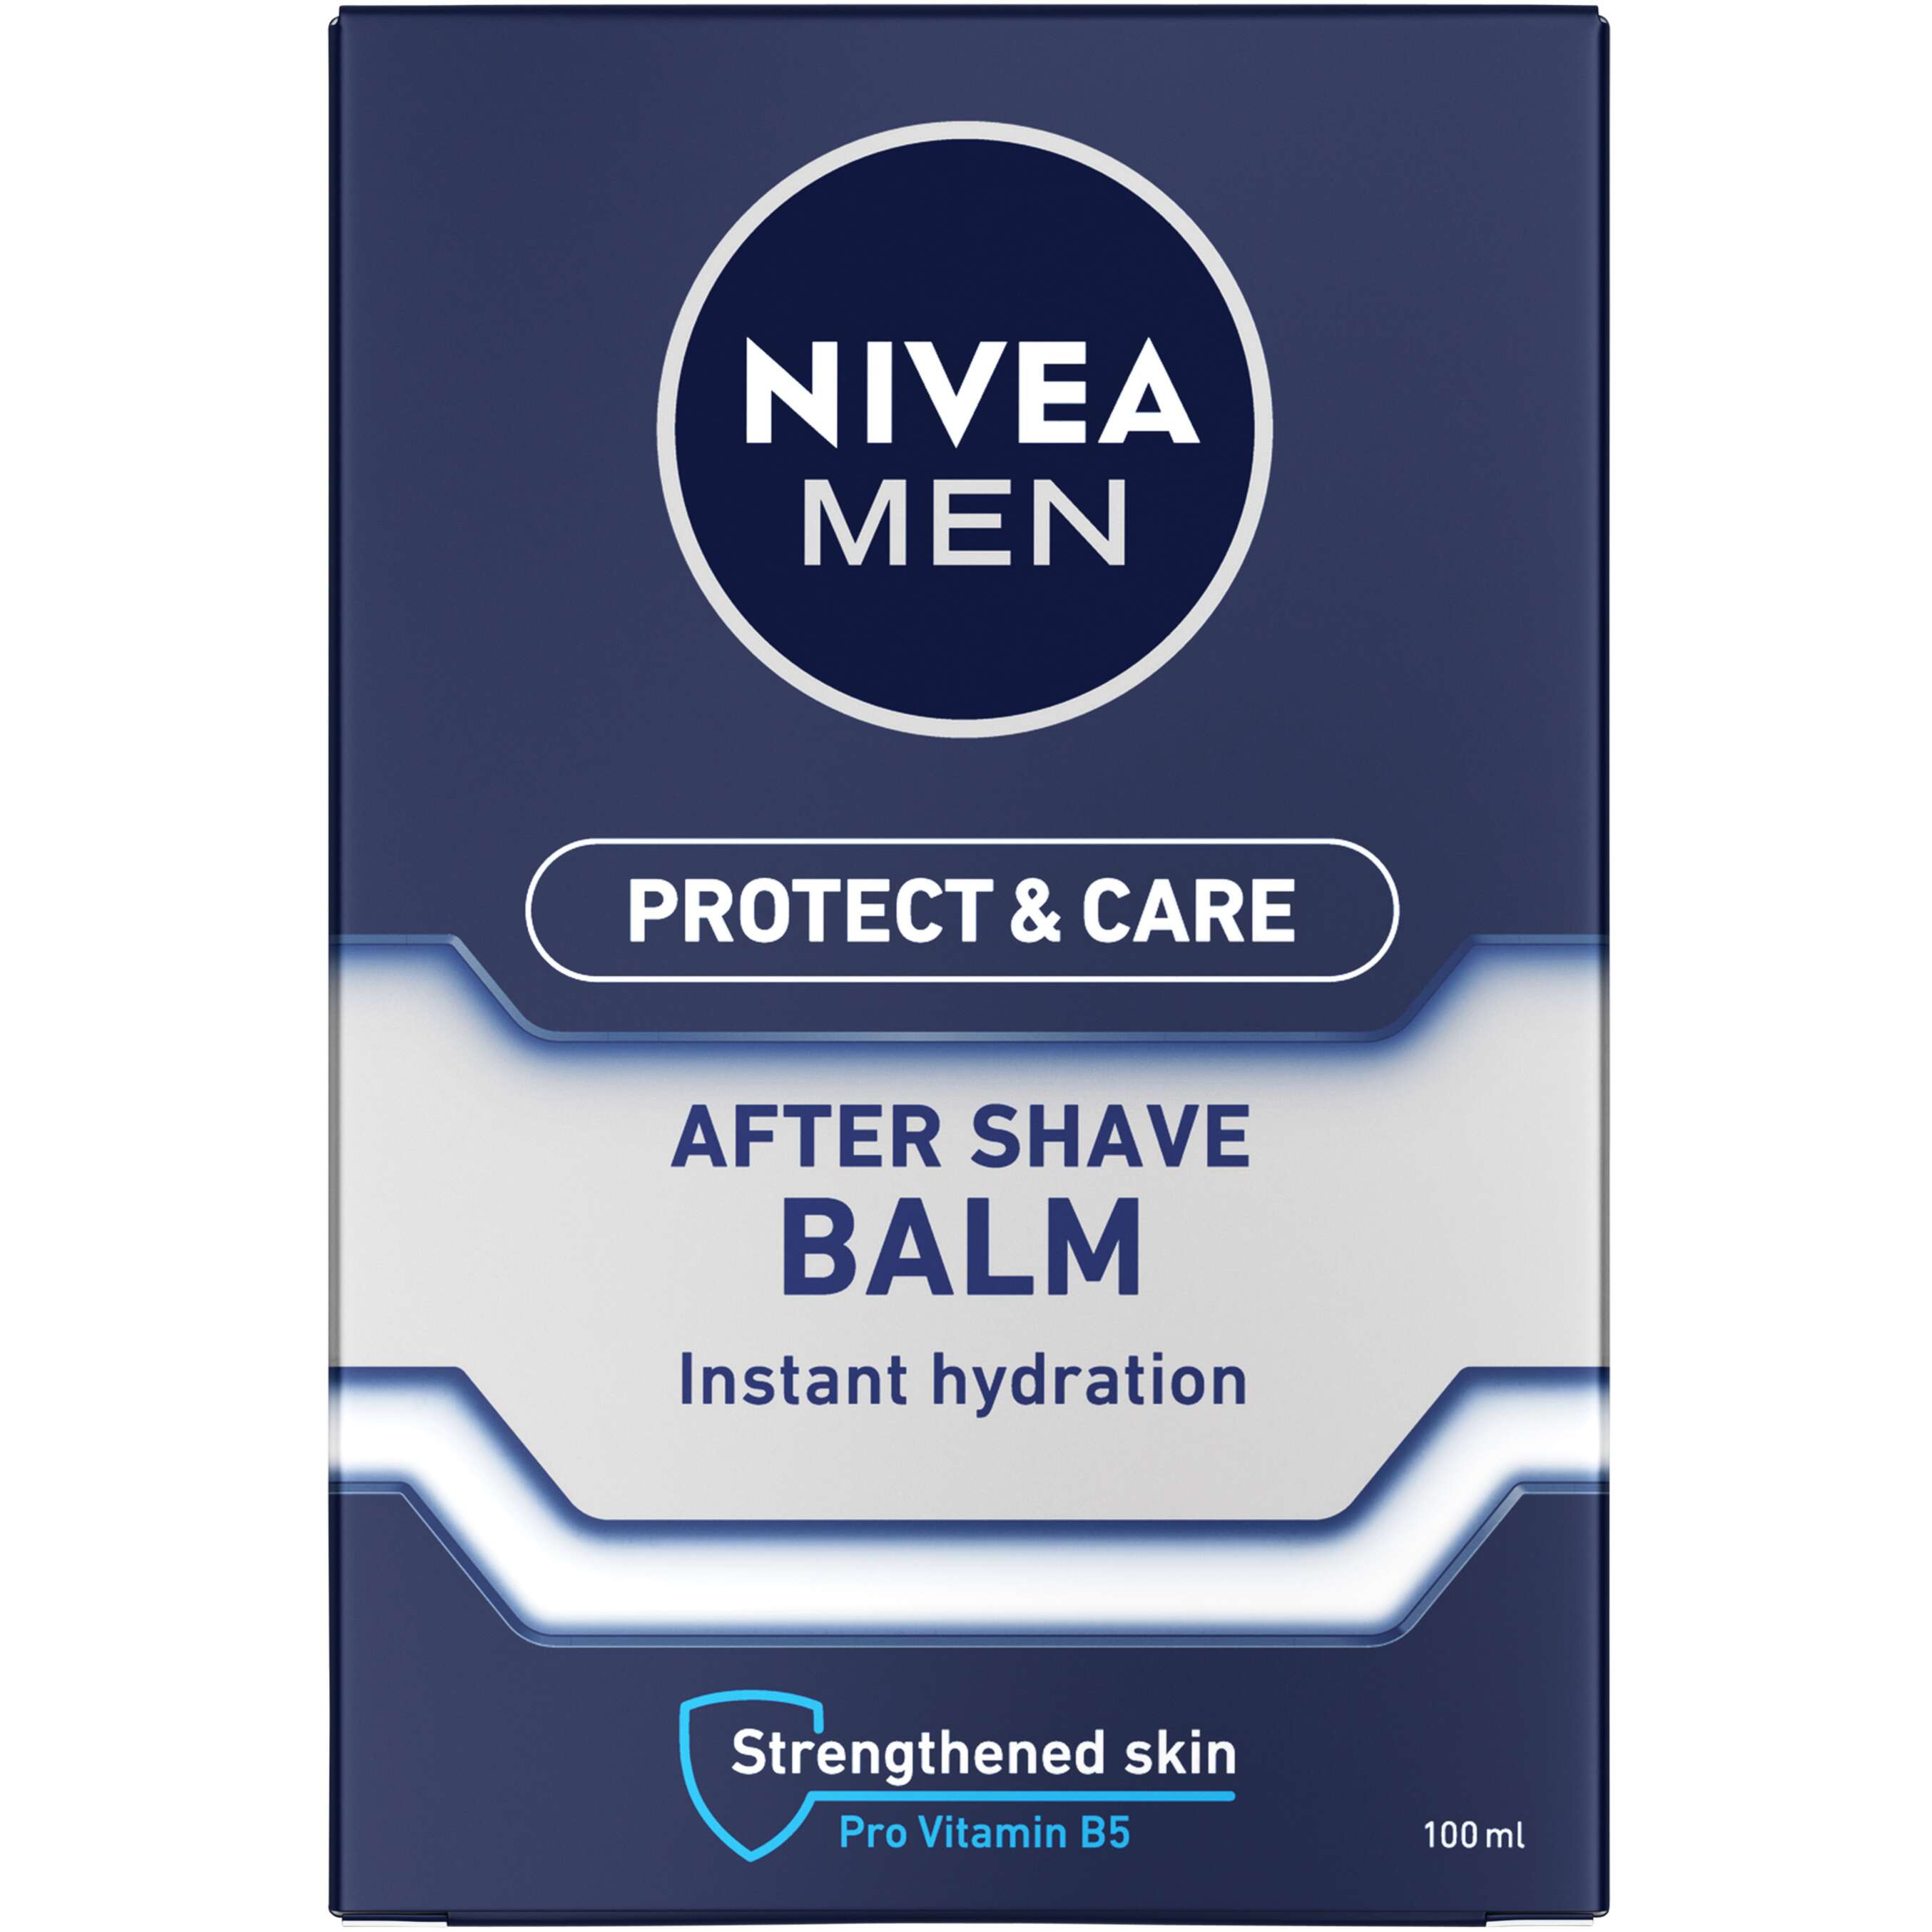 Изображение за продукта Nivea Men Балсам или Лосион за след бръснене